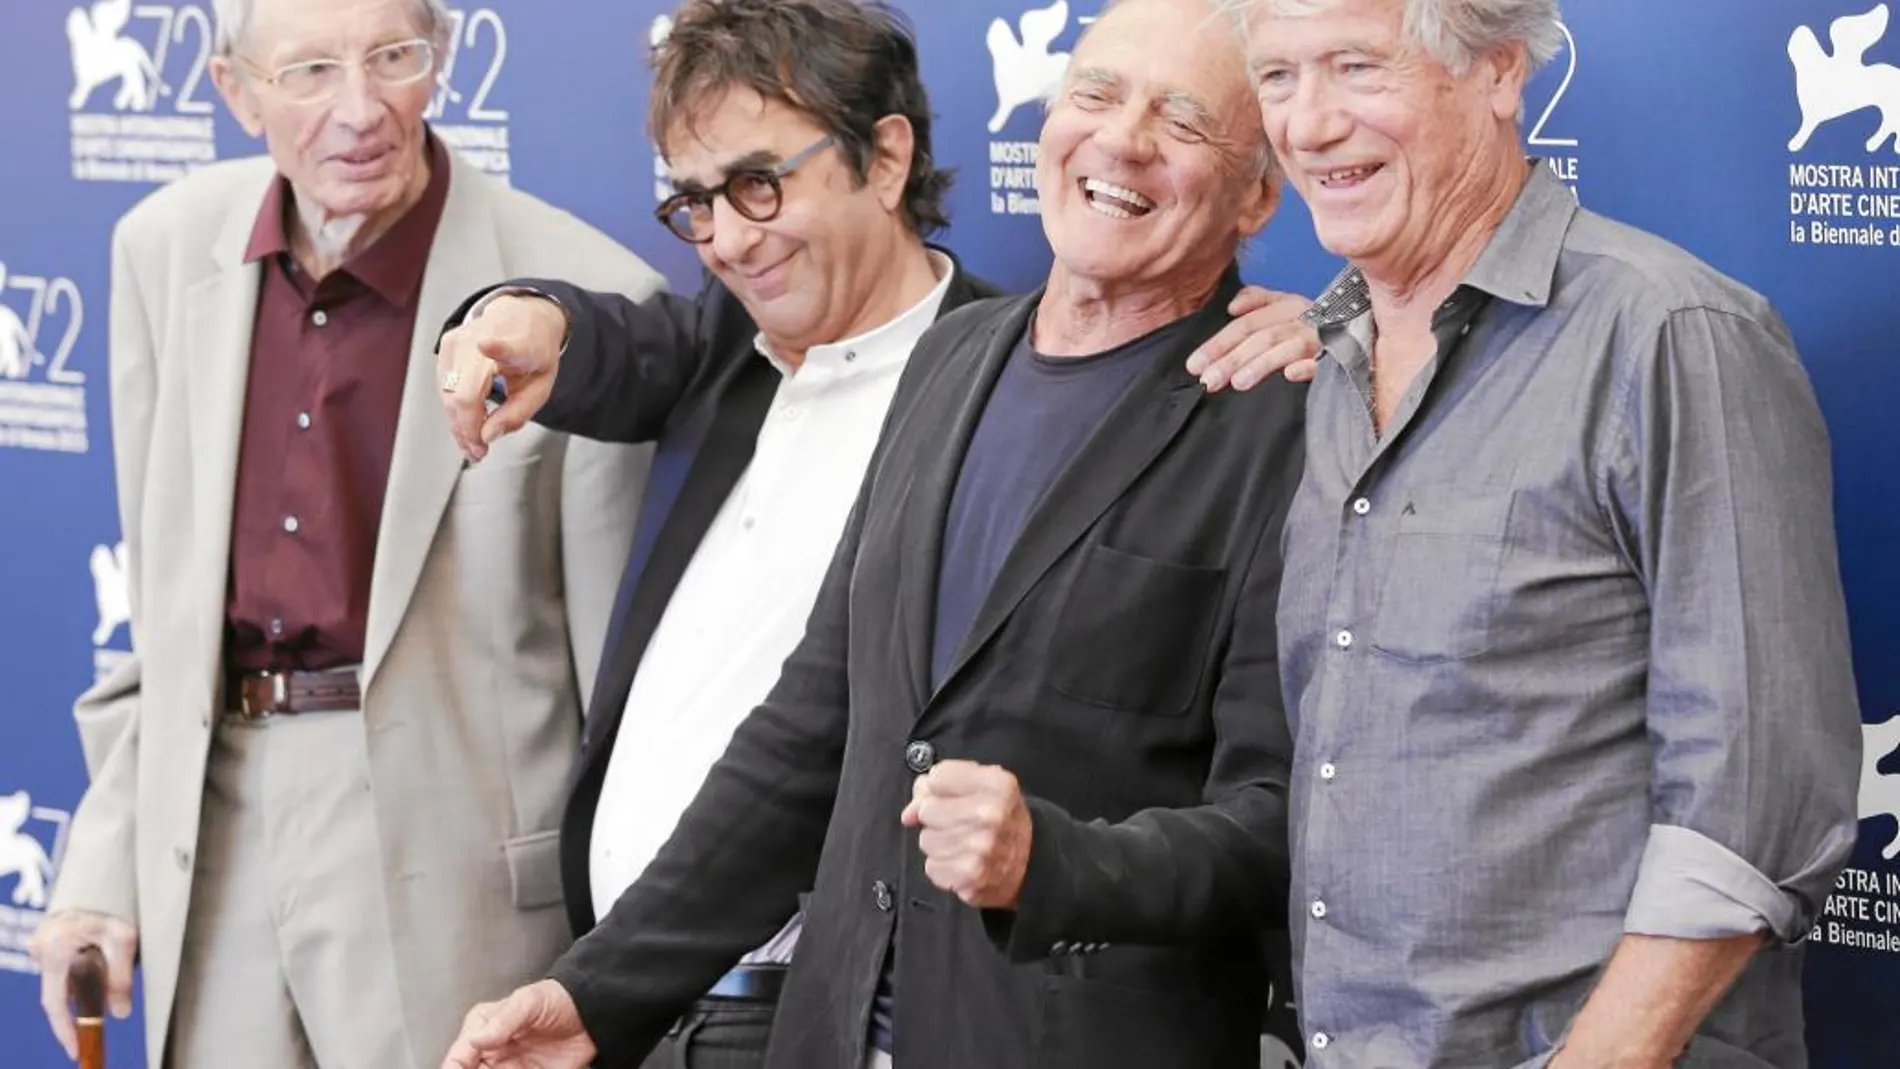 El director Atom Egoyan (segundo por la izquierda), junto a los veteranos actores (de izquierda a derecha) Heinz Lieven, Bruno Ganz y Jurgen Prochnow, ayer en Venecia